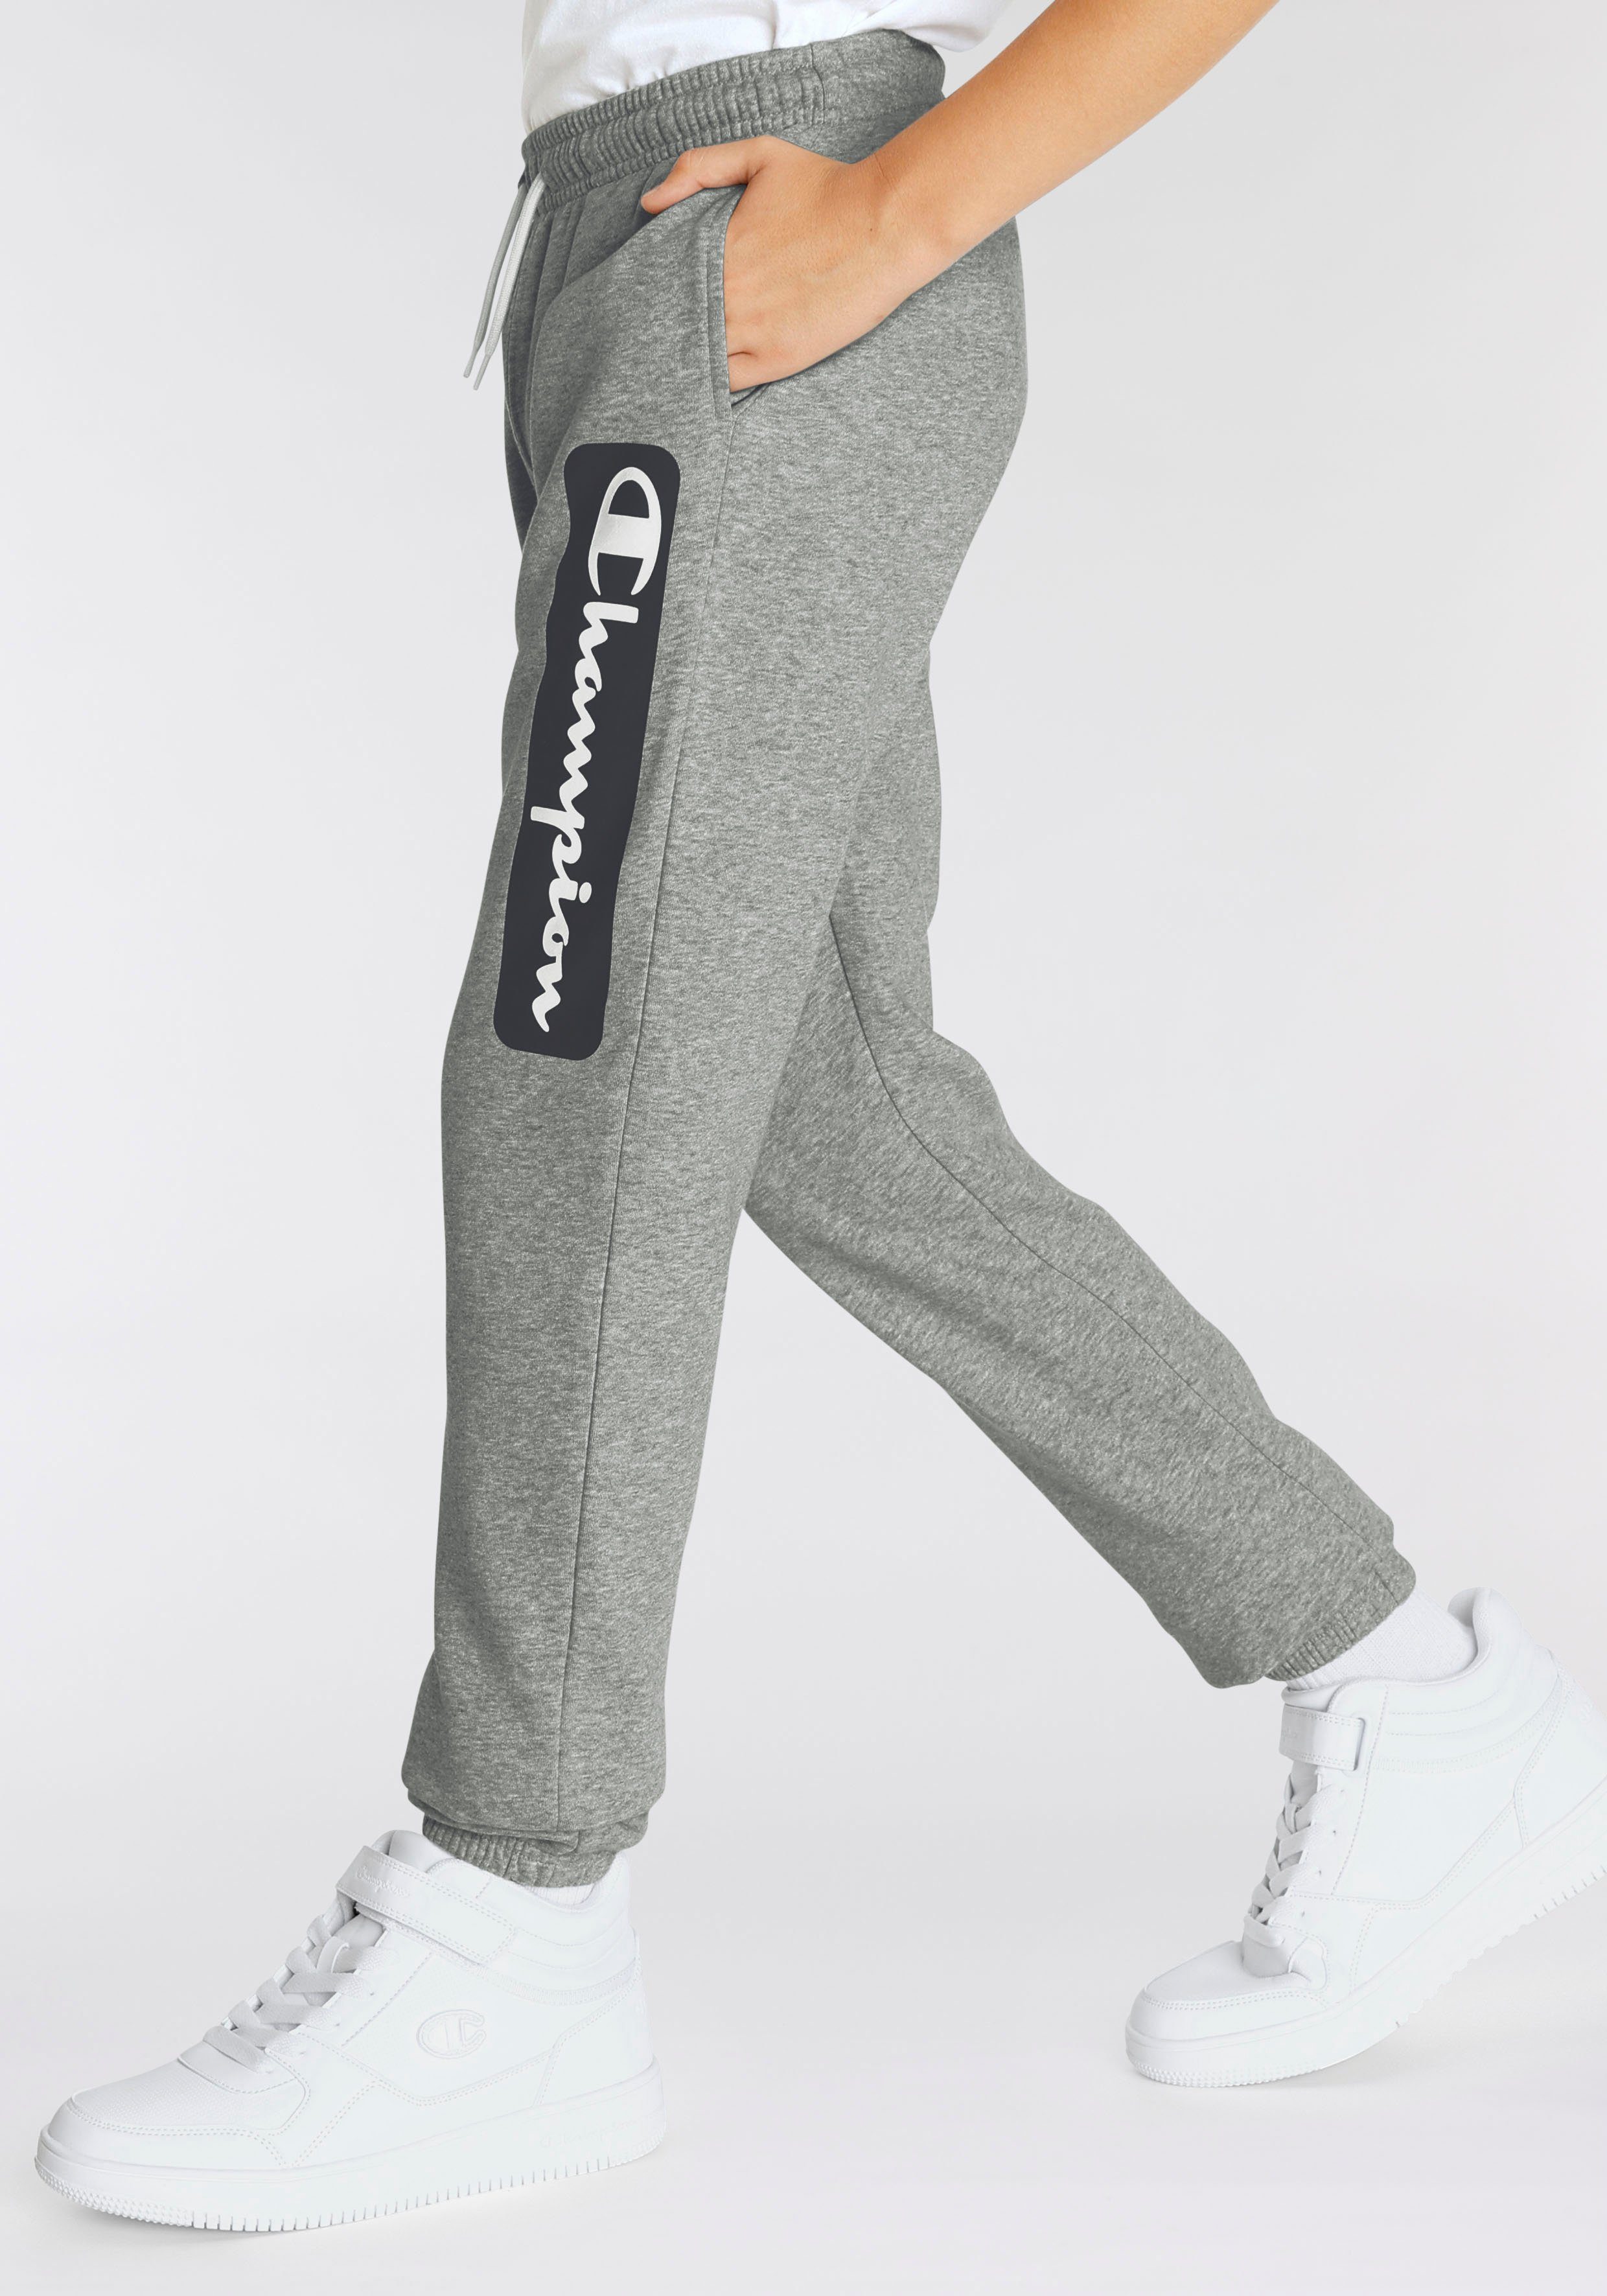 Jogginghose Champion - Cuff Shop grau Pants Elastic für Kinder Graphic